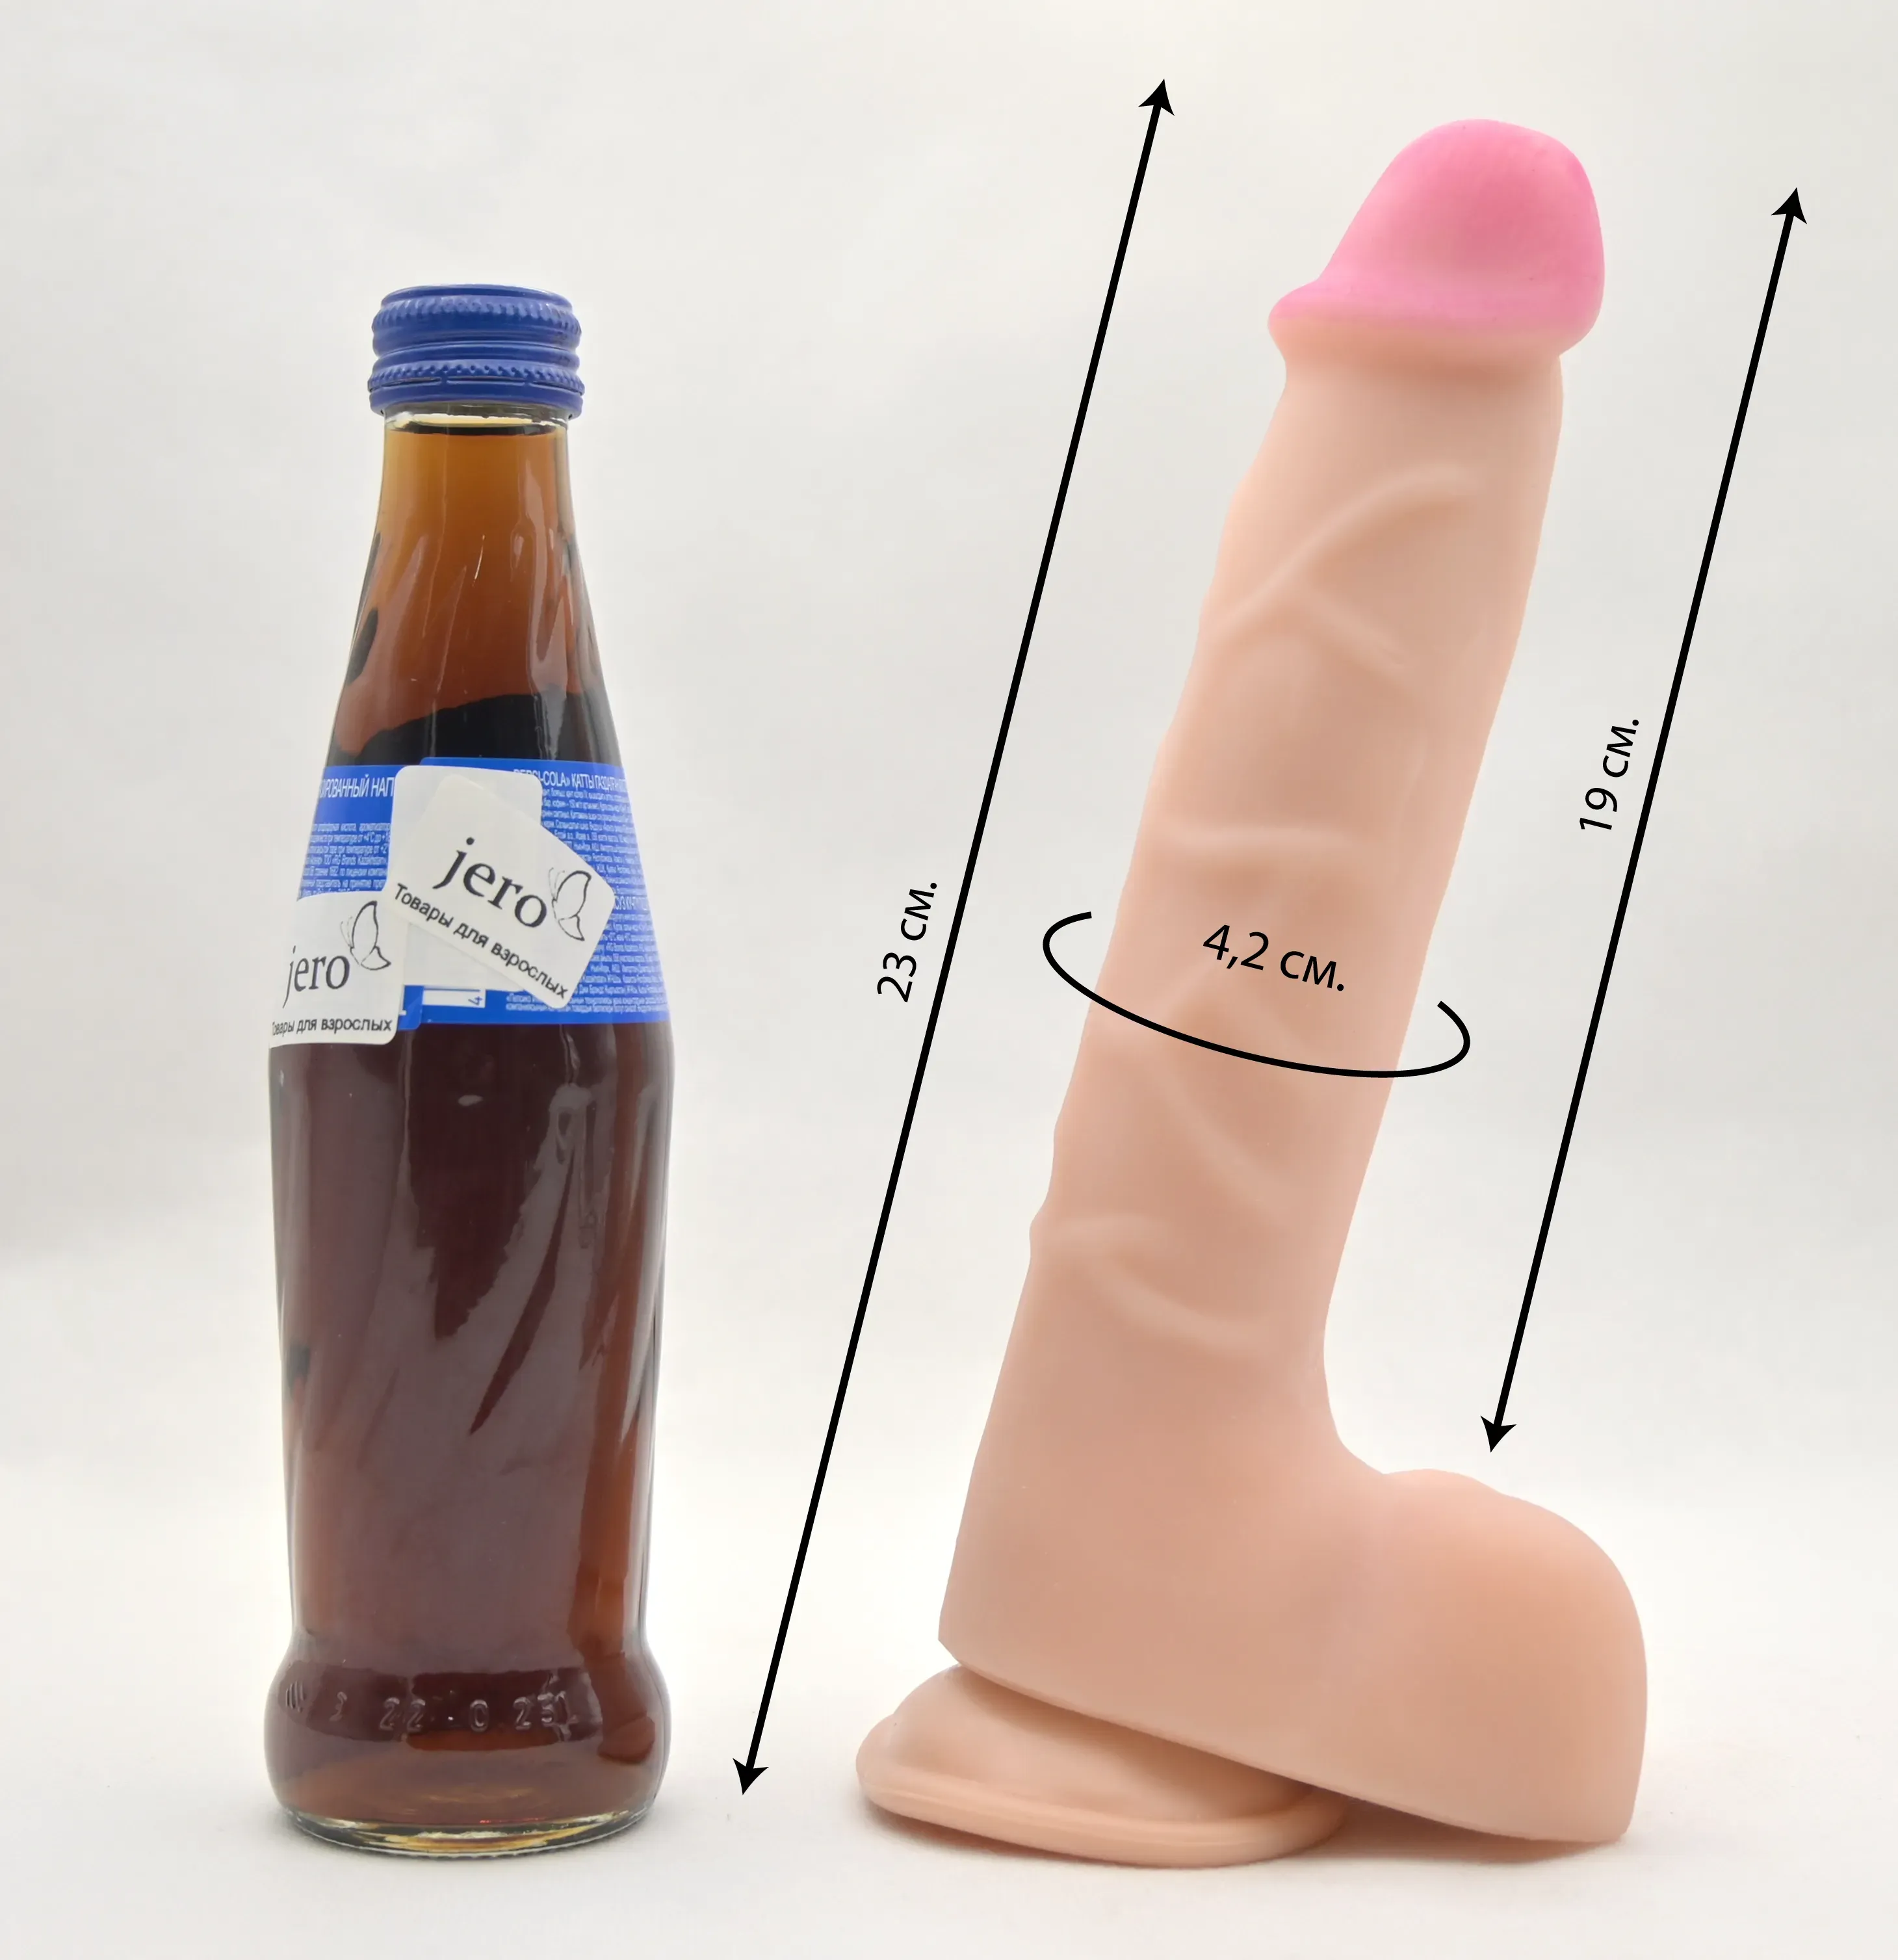 Размеры фаллоса и сравнение с бутылкой колы